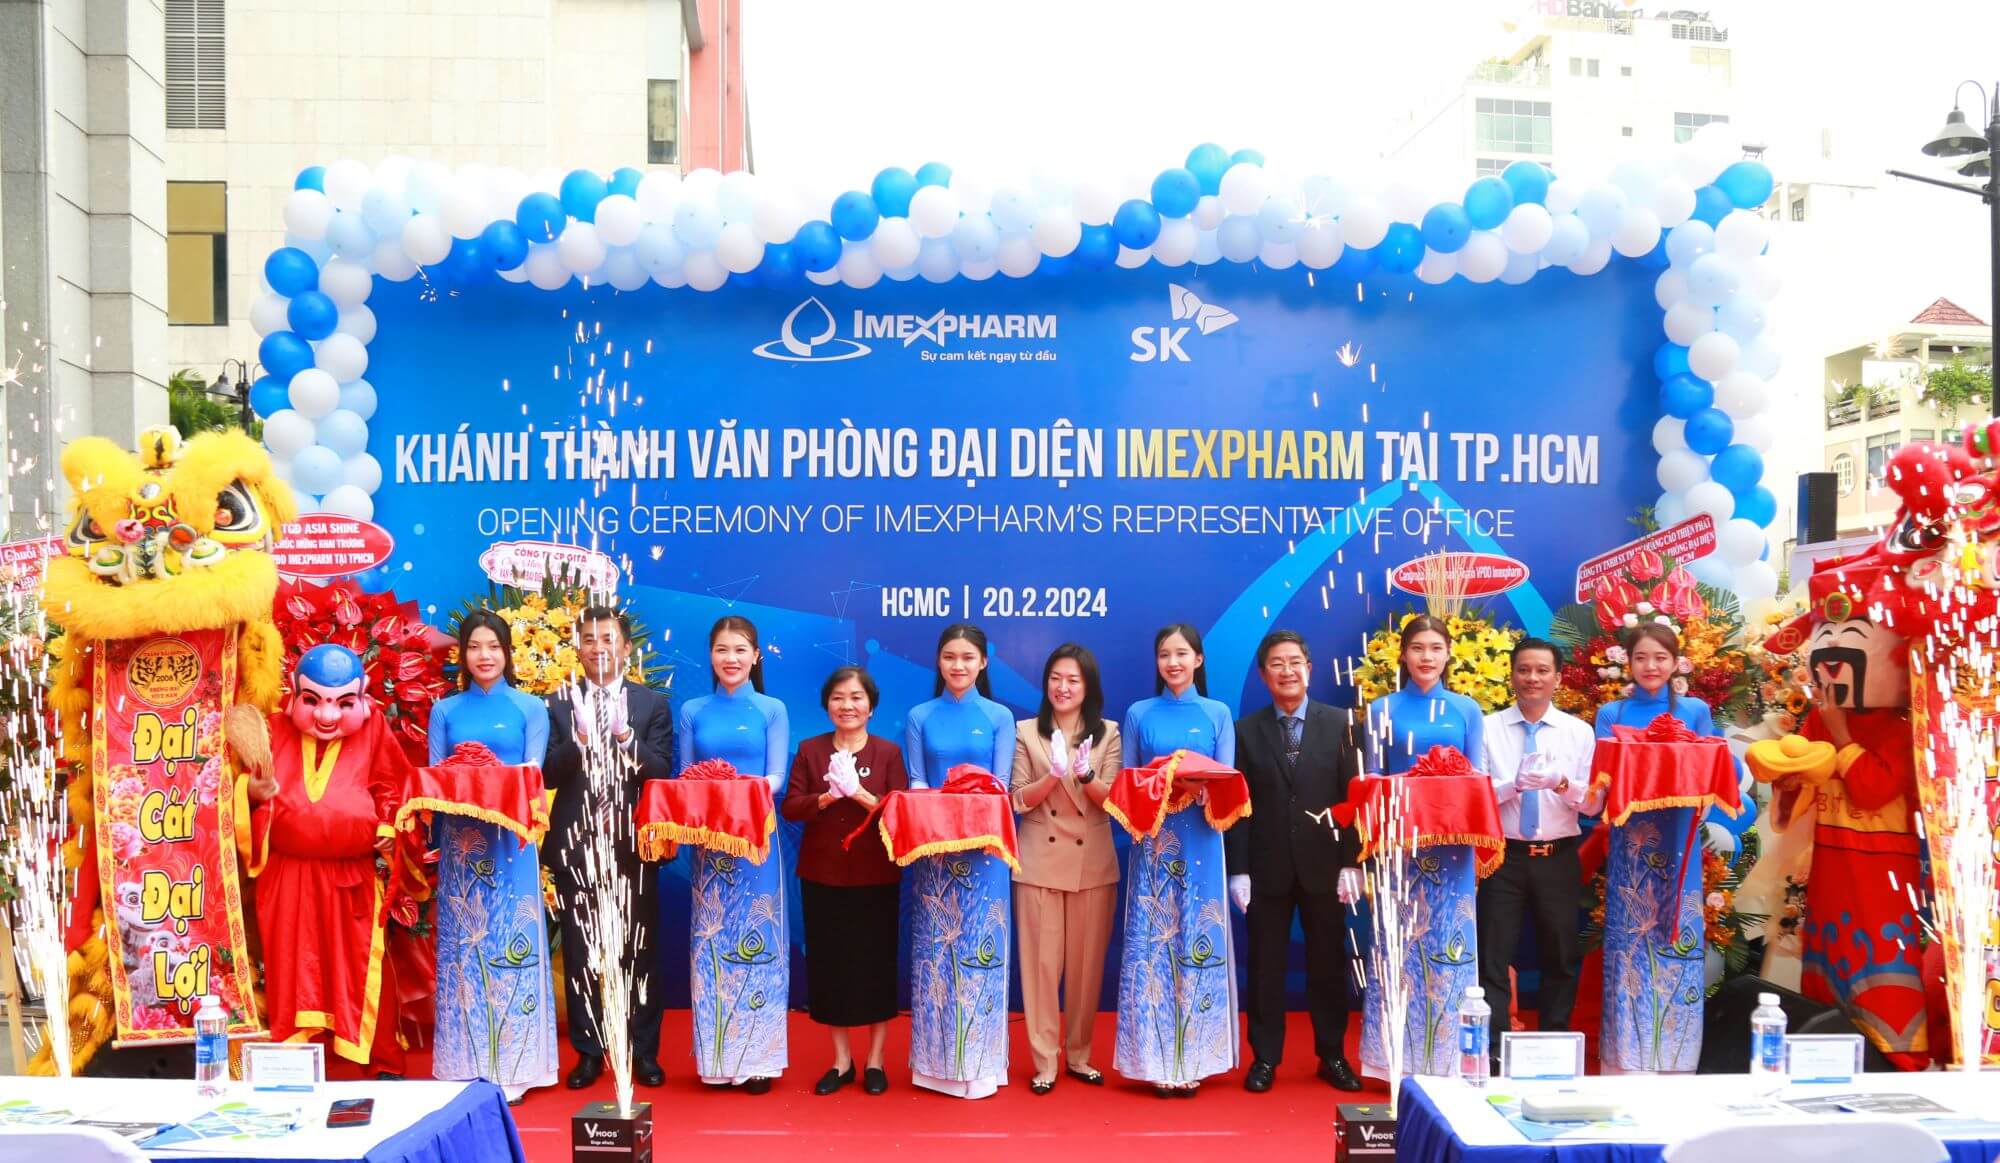 Imexpharm khánh thành văn phòng đại diện tại thành phố Hồ Chí Minh, gia tăng sự hiện diện của thương hiệu và phục vụ khách hàng, đối tác và nhà đầu tư ngày một tốt hơn